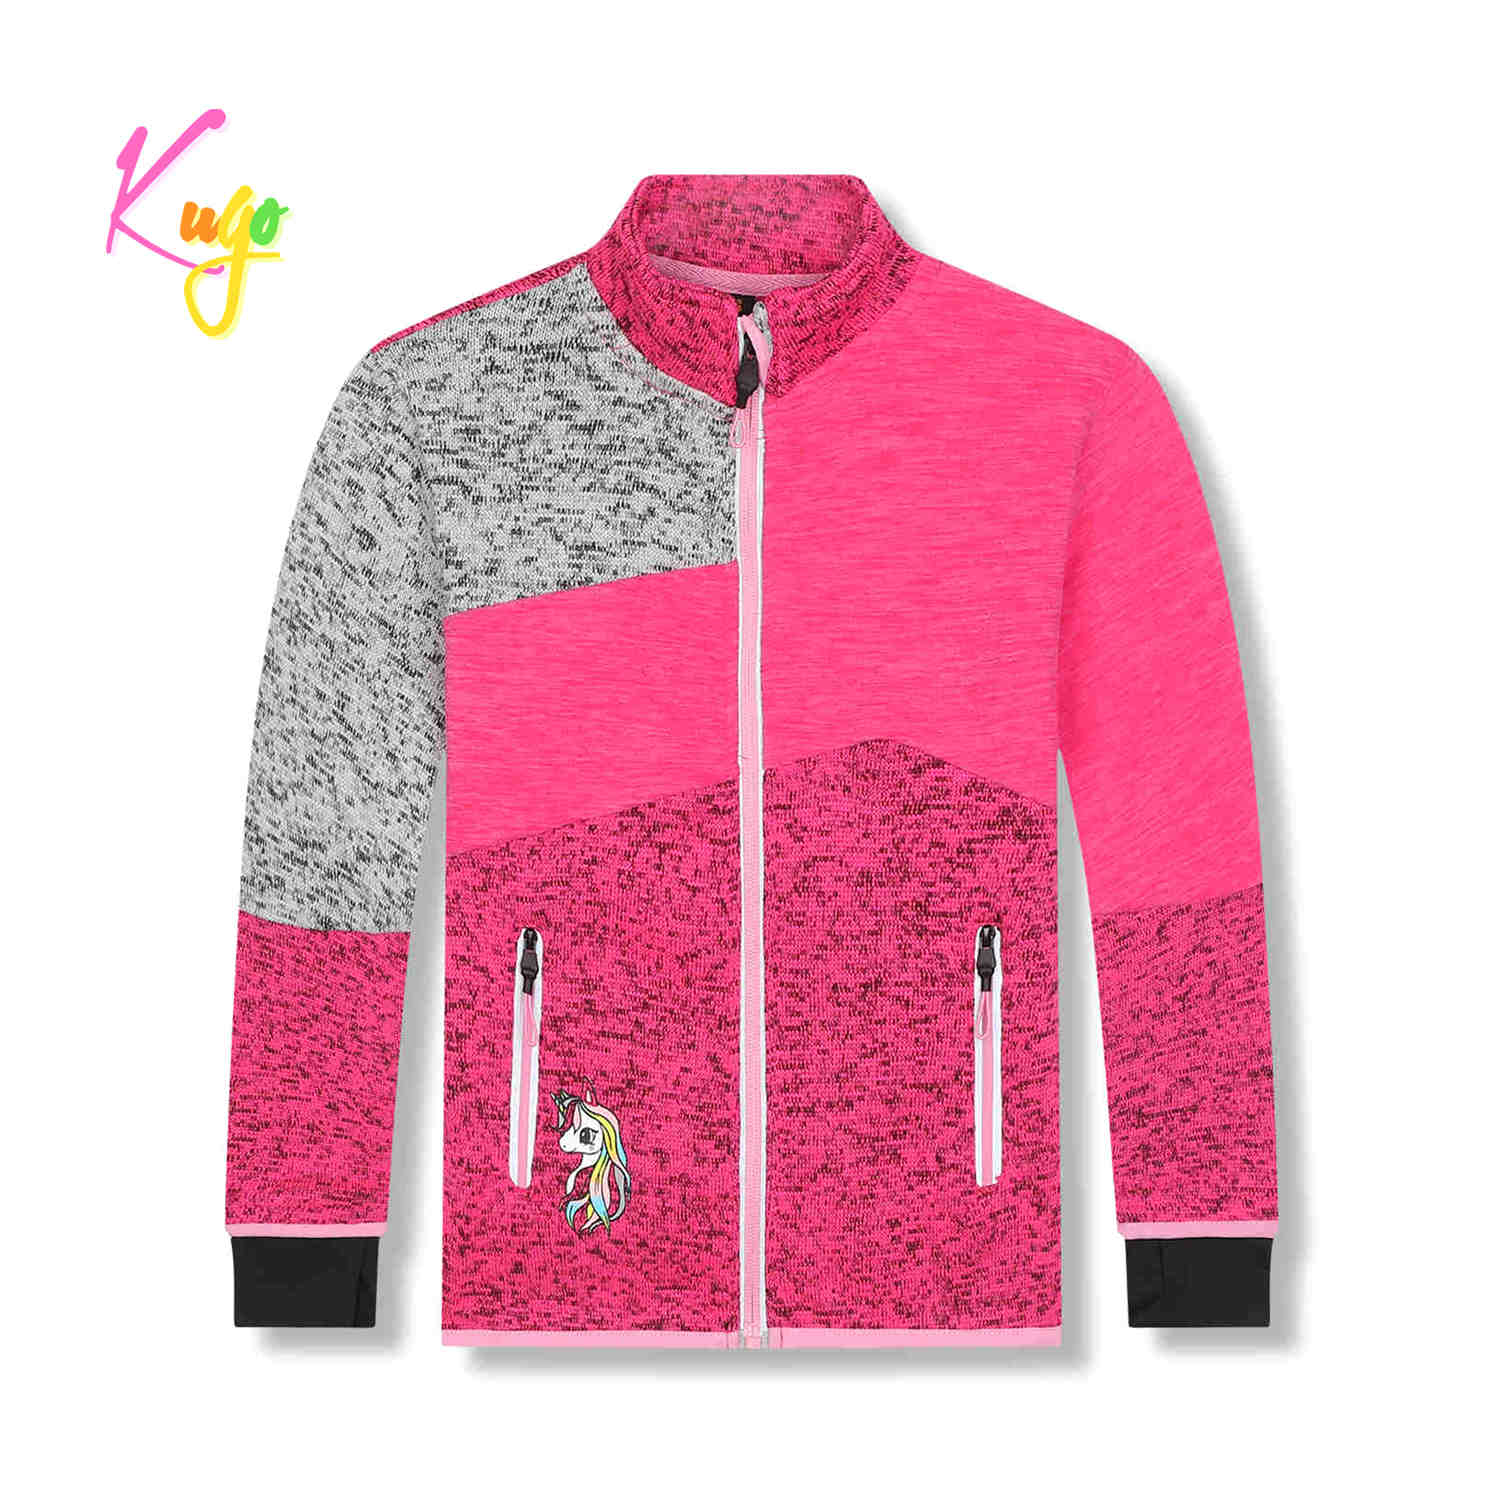 Dívčí outdoorová mikina - KUGO HM1981, růžová Barva: Růžová, Velikost: 122